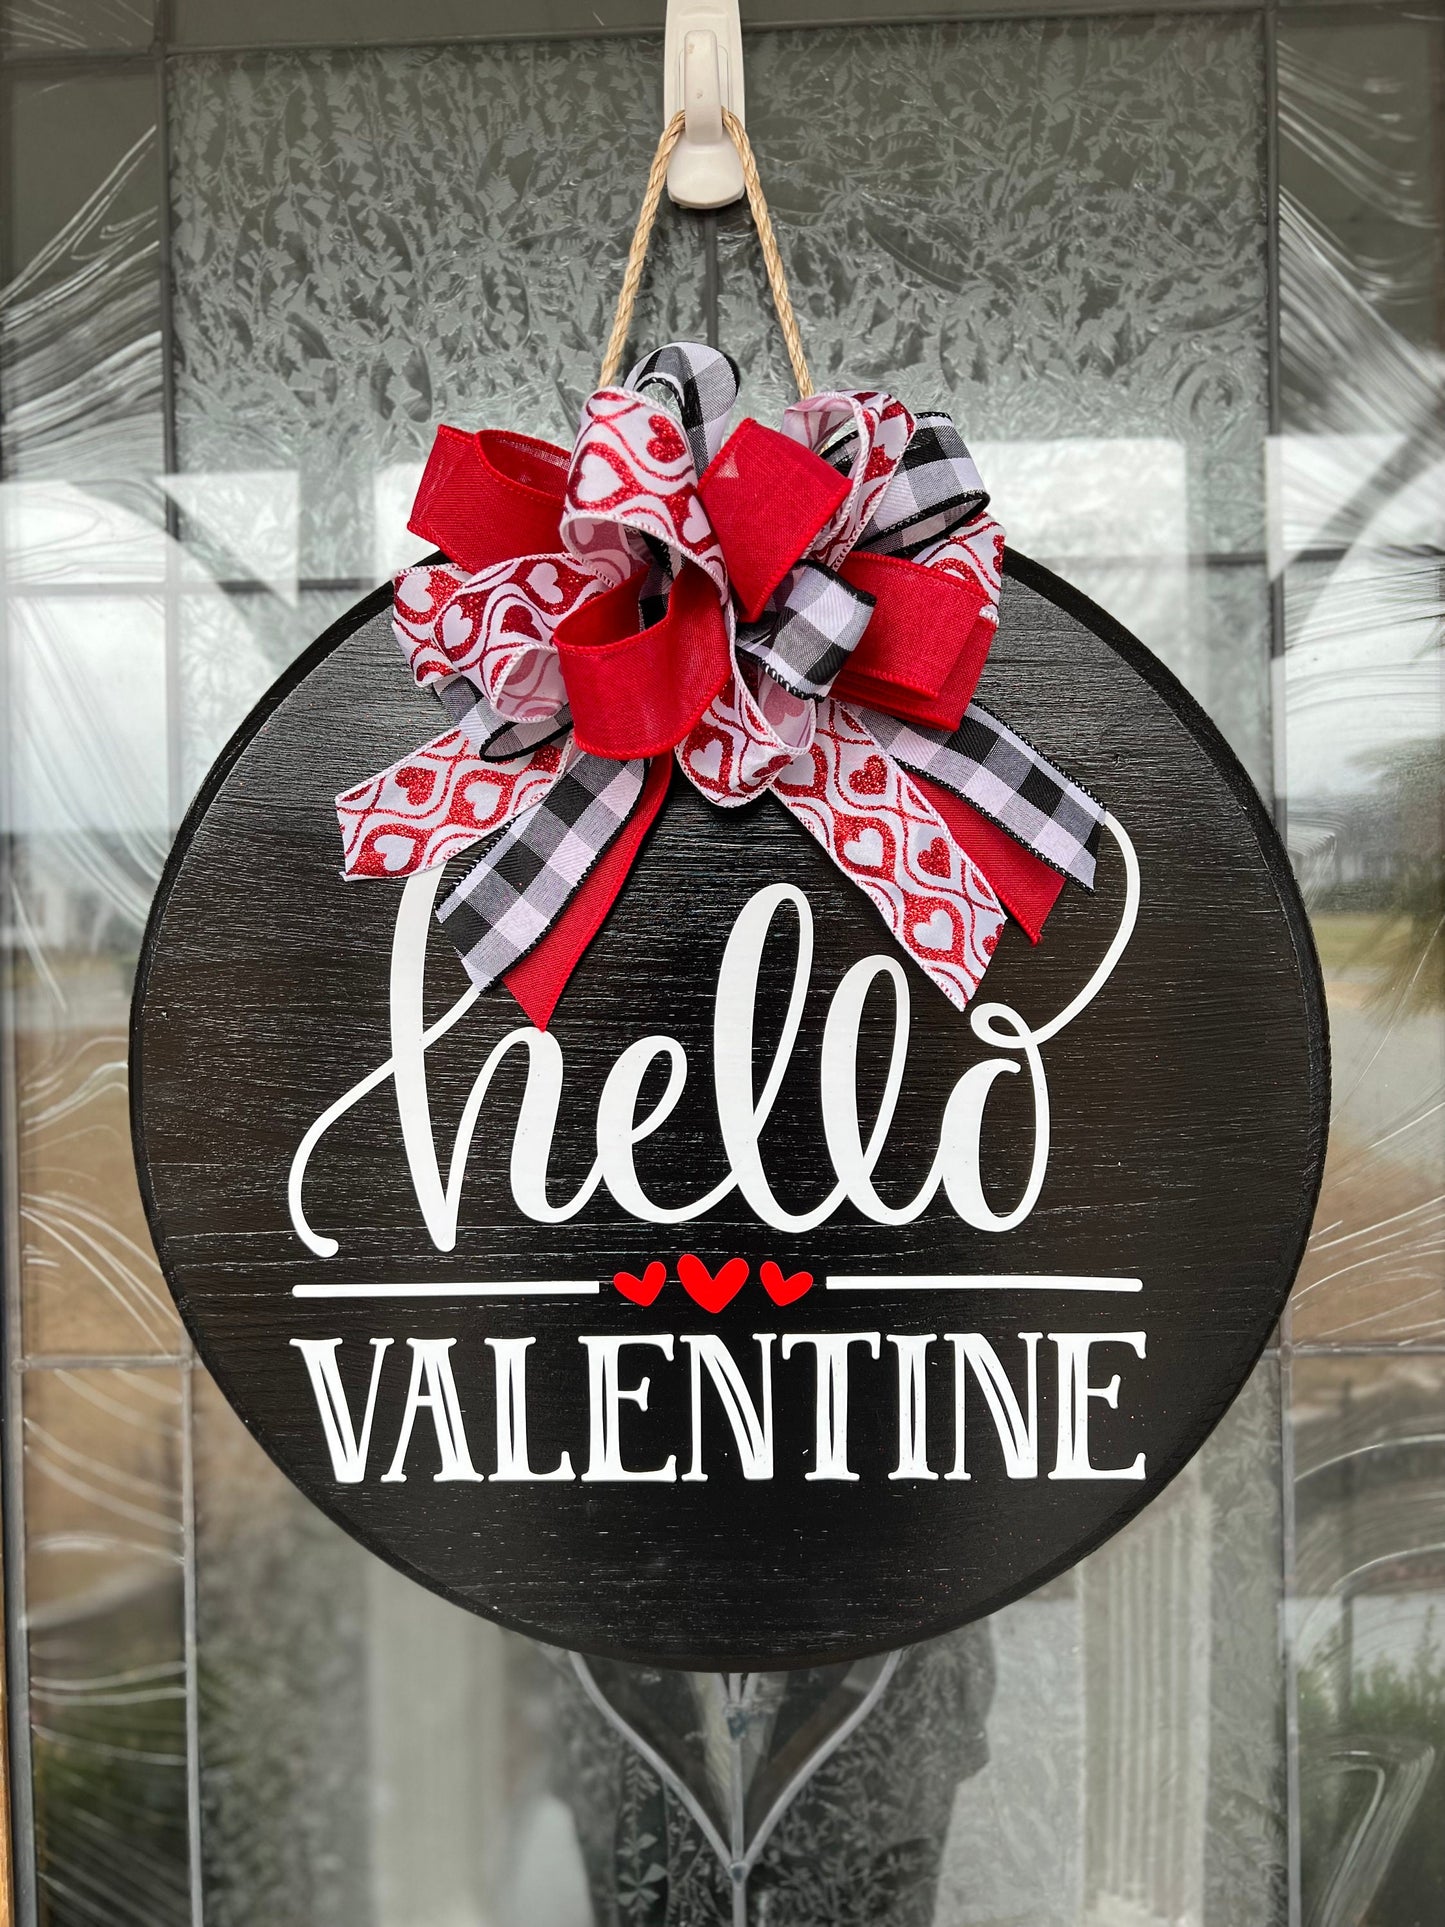 Valentines Front Door Sign | Hello Valentine